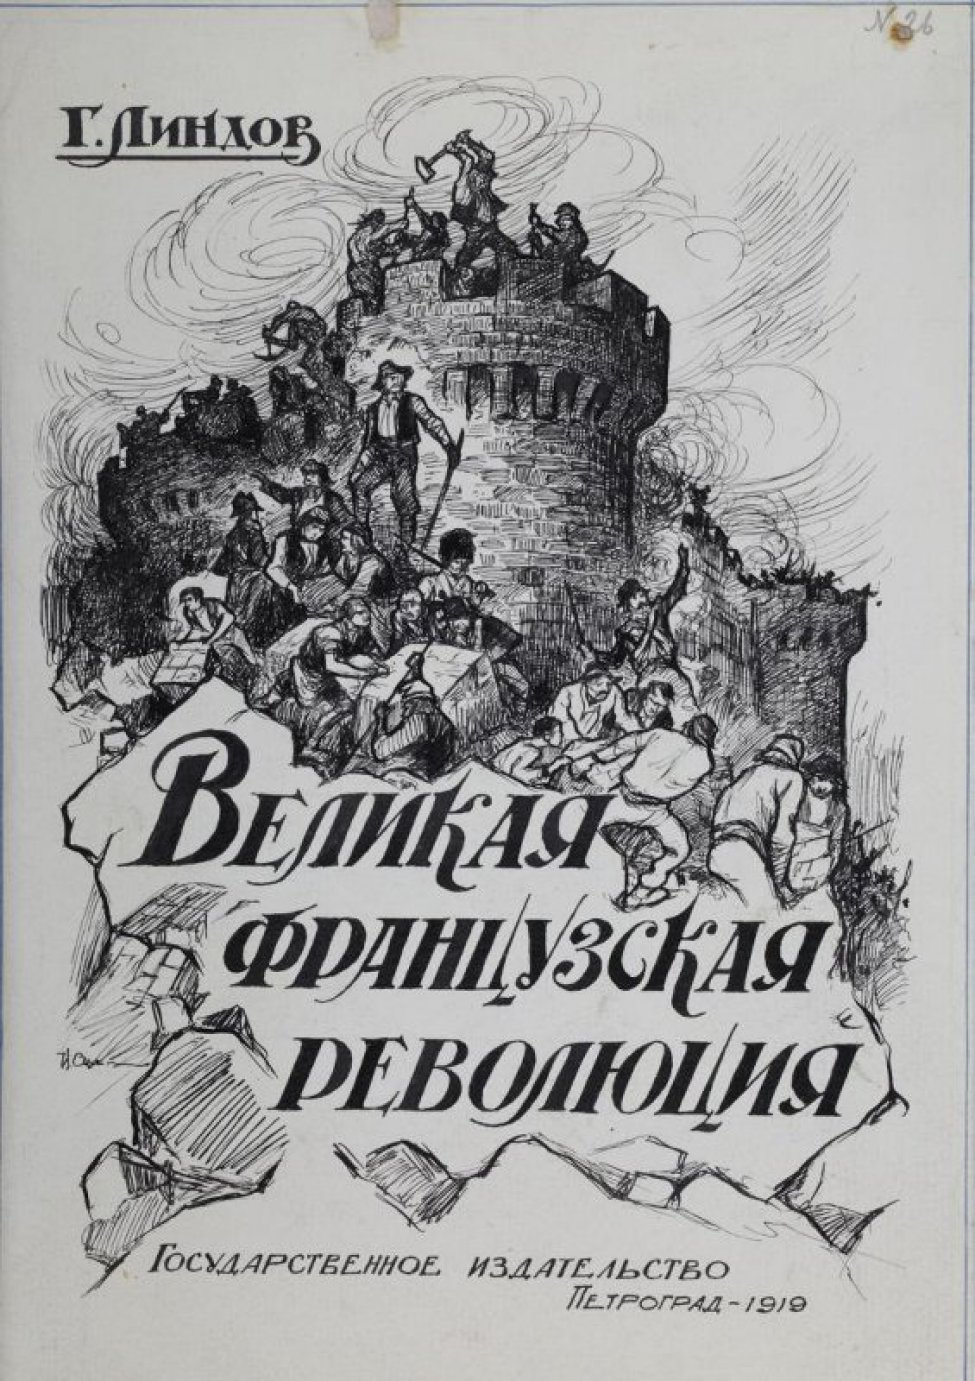 Изображены стены крепости с башнями, на вершинах которых люди разрушающие эту крепость. Внизу у стен крепости люди, убирающие камни. На обломках большого камня написано "Великая Французская революция", над рисунком - "Г.Линдов", внизу - Государственное издательство Петроград 1919.